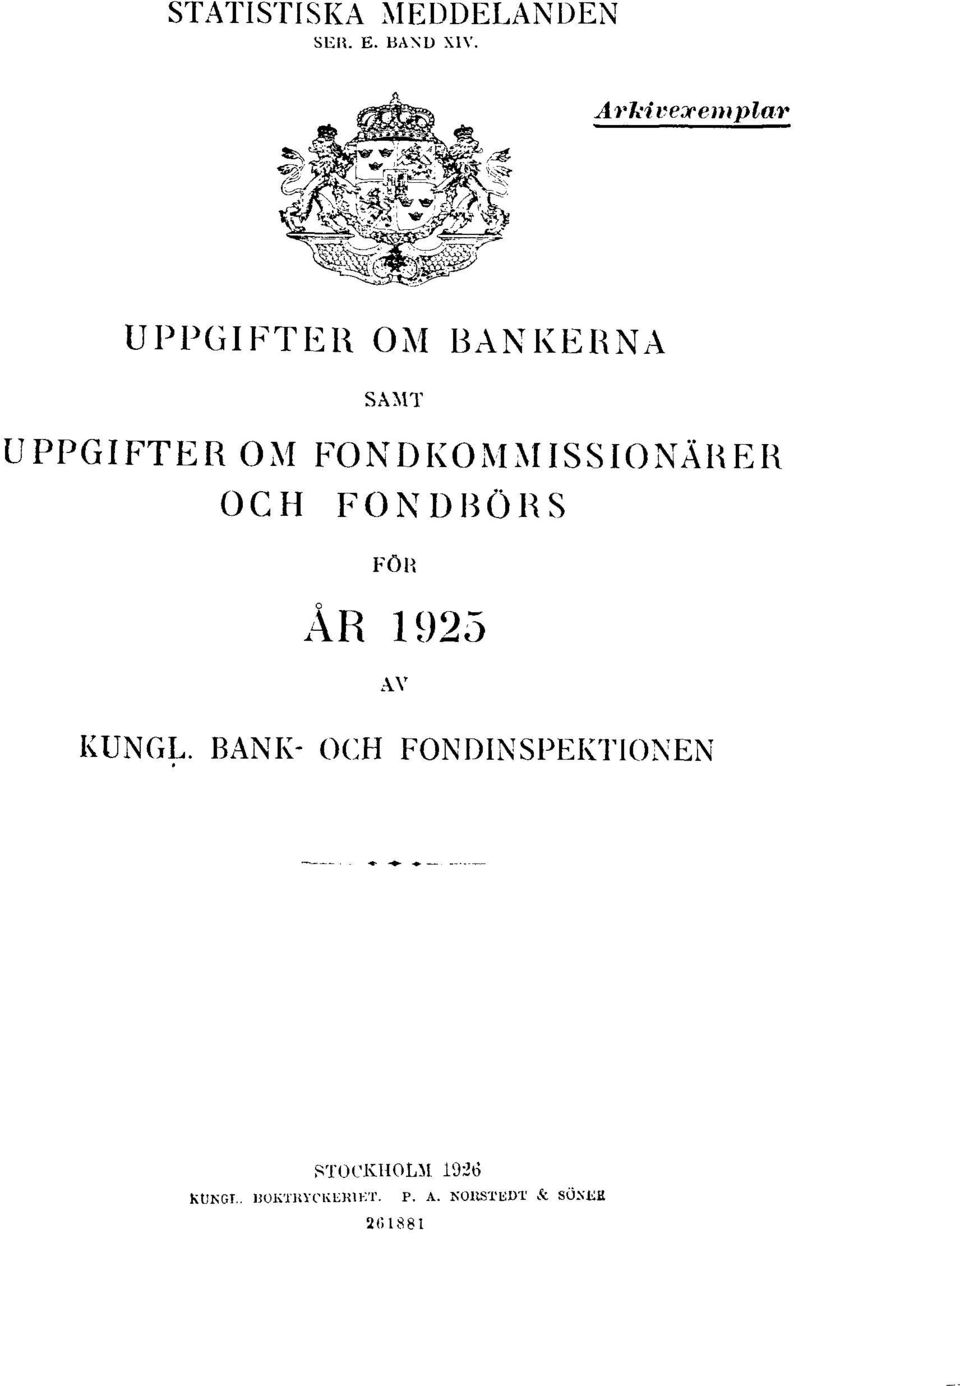 FONDKOMMISSIONÄRER OCH FONDBÖRS FÖR ÅR 1925 AV KUNGL.